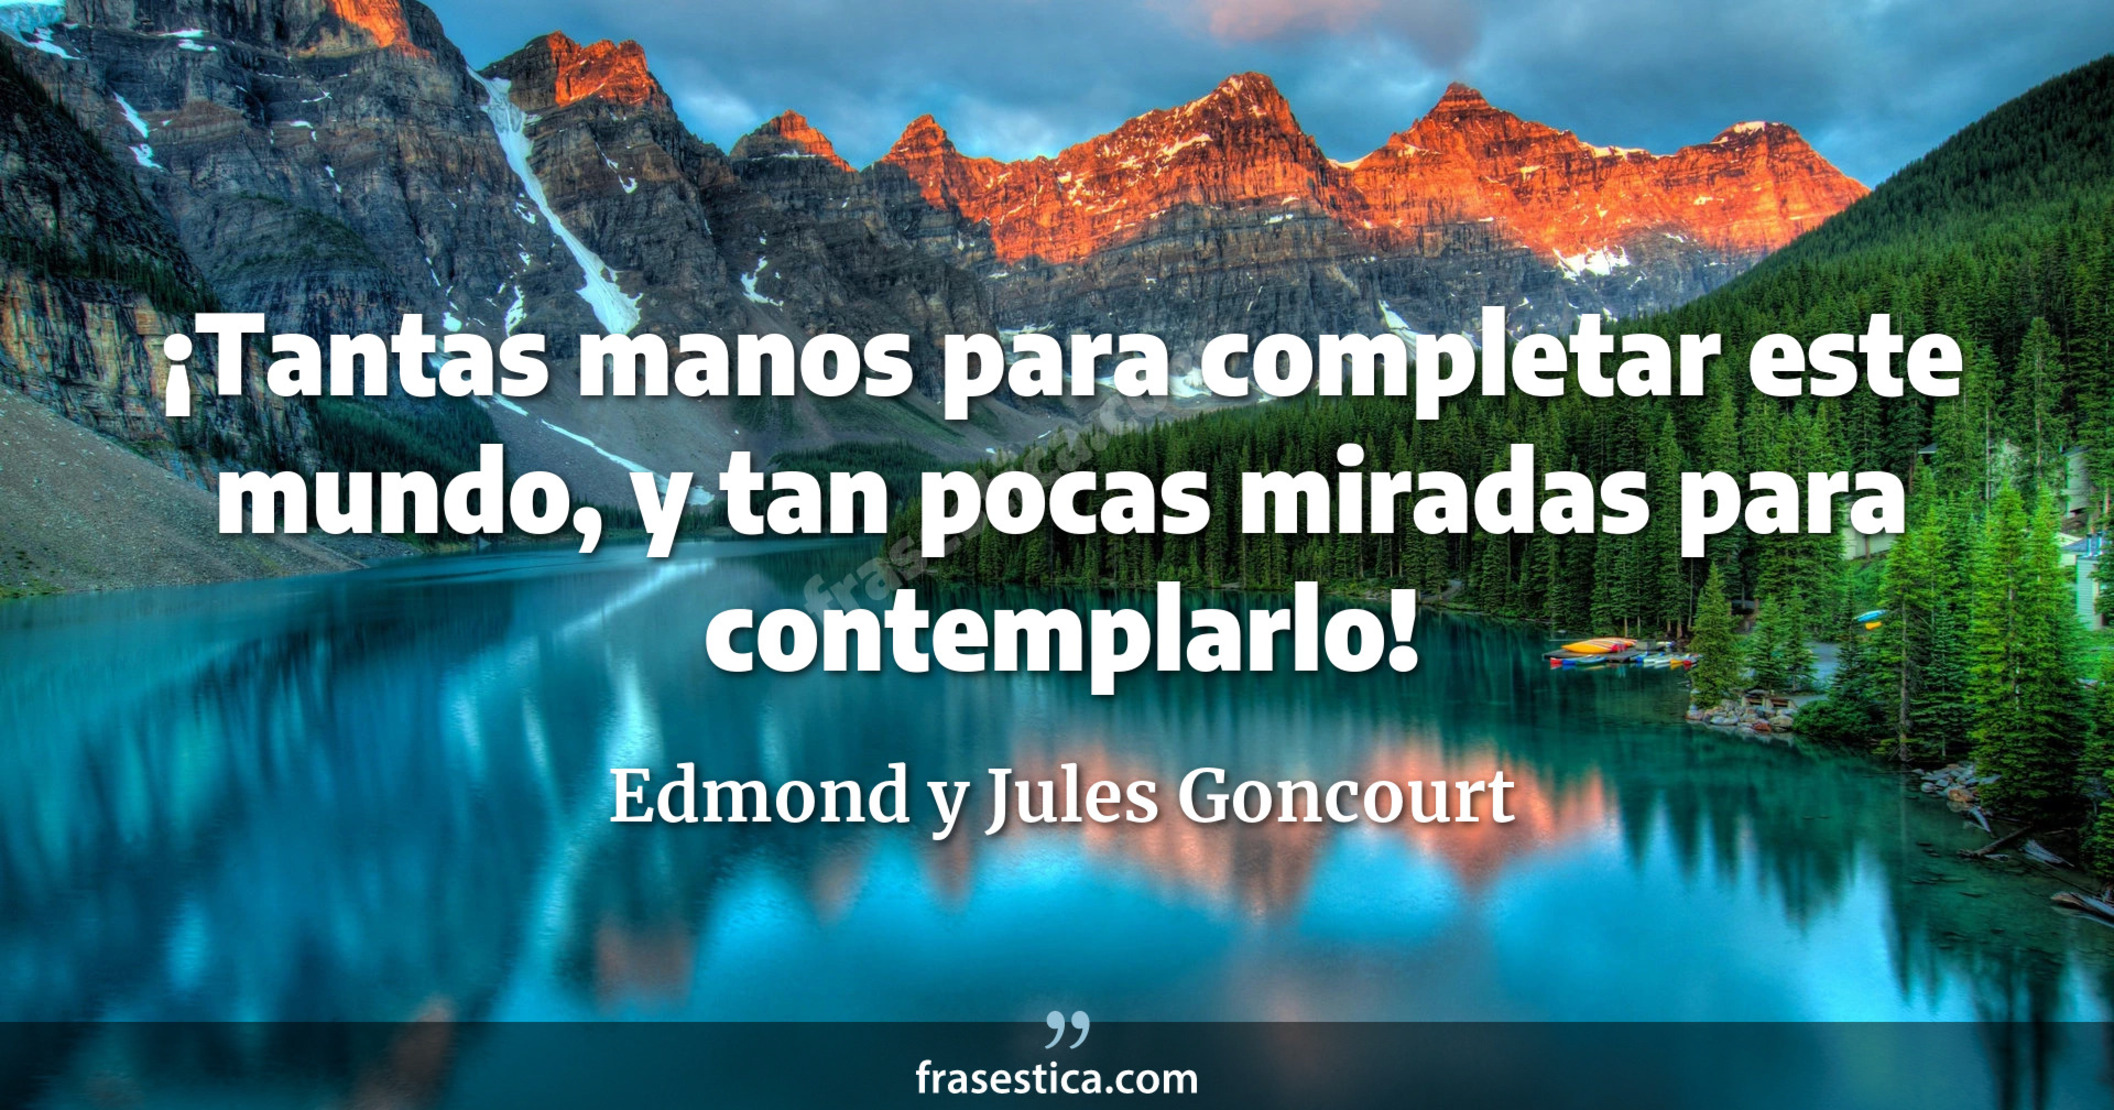 ¡Tantas manos para completar este mundo, y tan pocas miradas para contemplarlo! - Edmond y Jules Goncourt